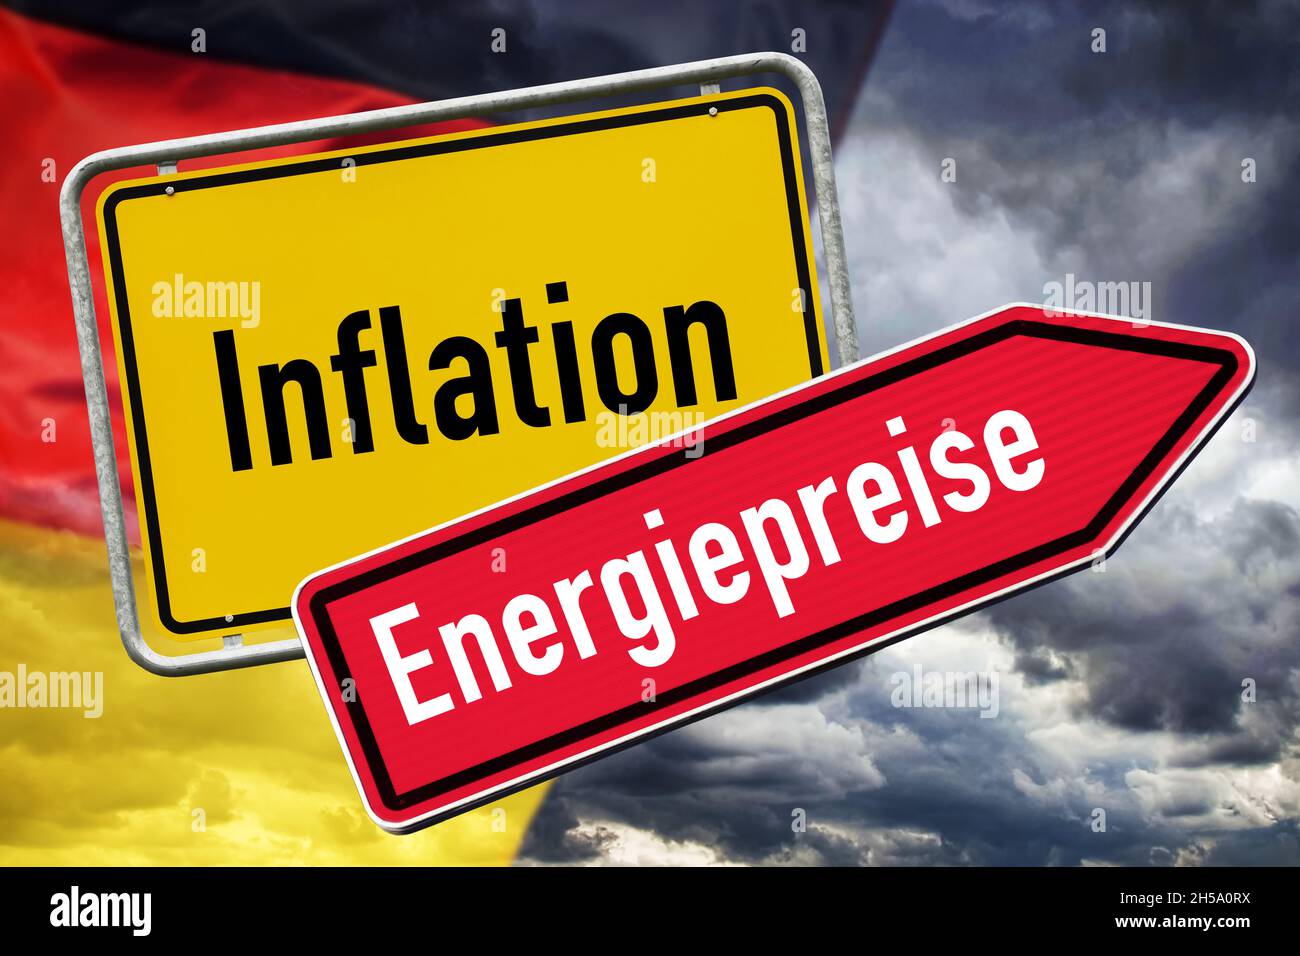 FOTOMONTAGE, Ortsschild Inflation und Wegweiser Energiepreise, Anstieg der Inflationsrate Stock Photo